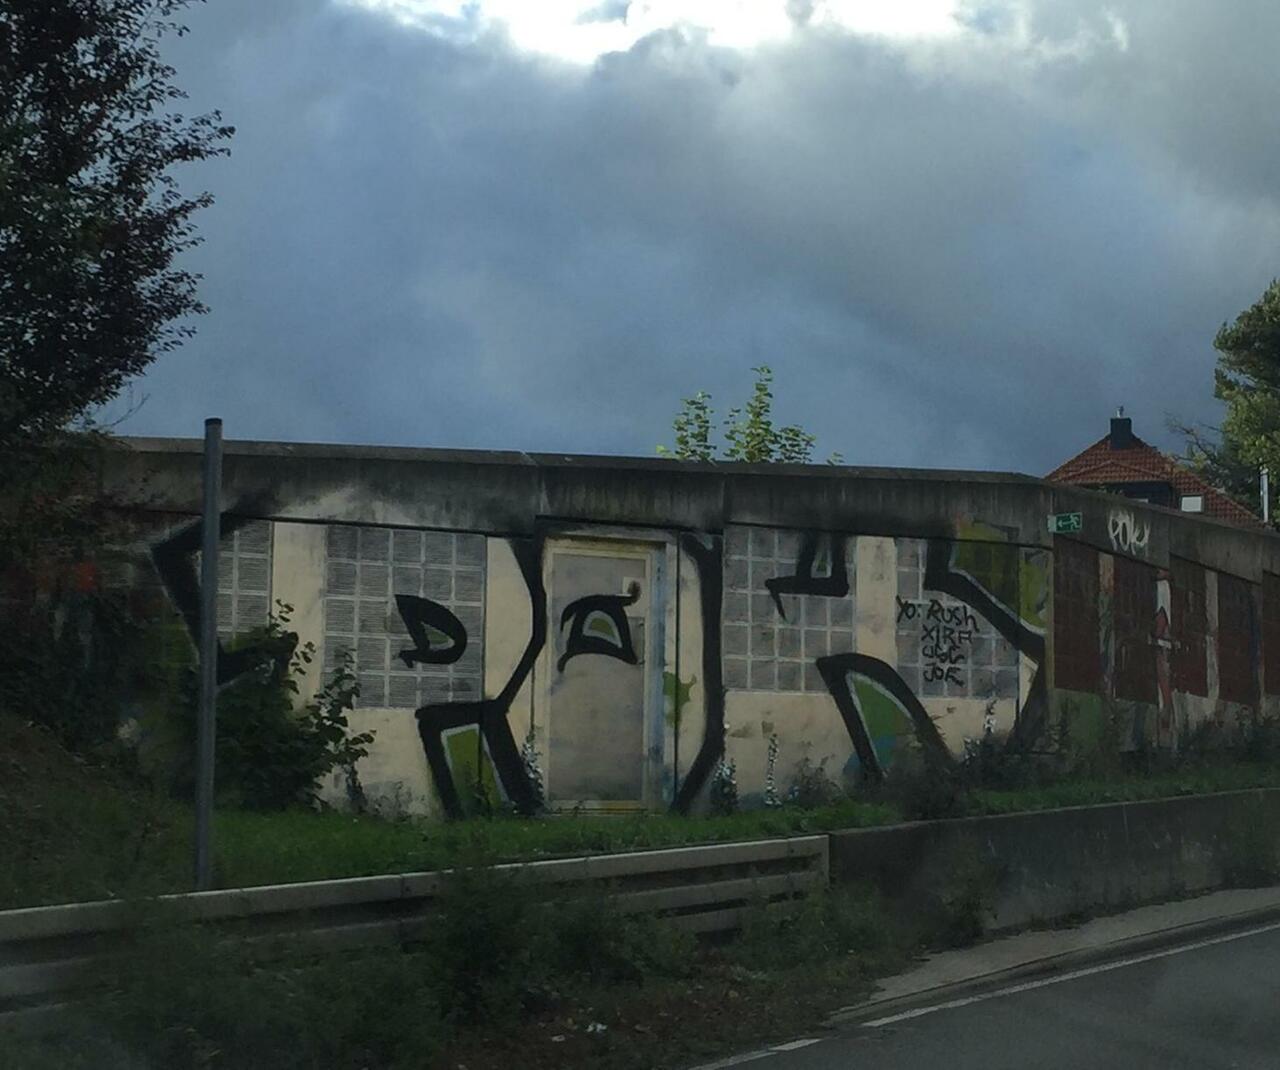 ...A661 // POK //#streetart #graffiti http://t.co/rplbx3dw56